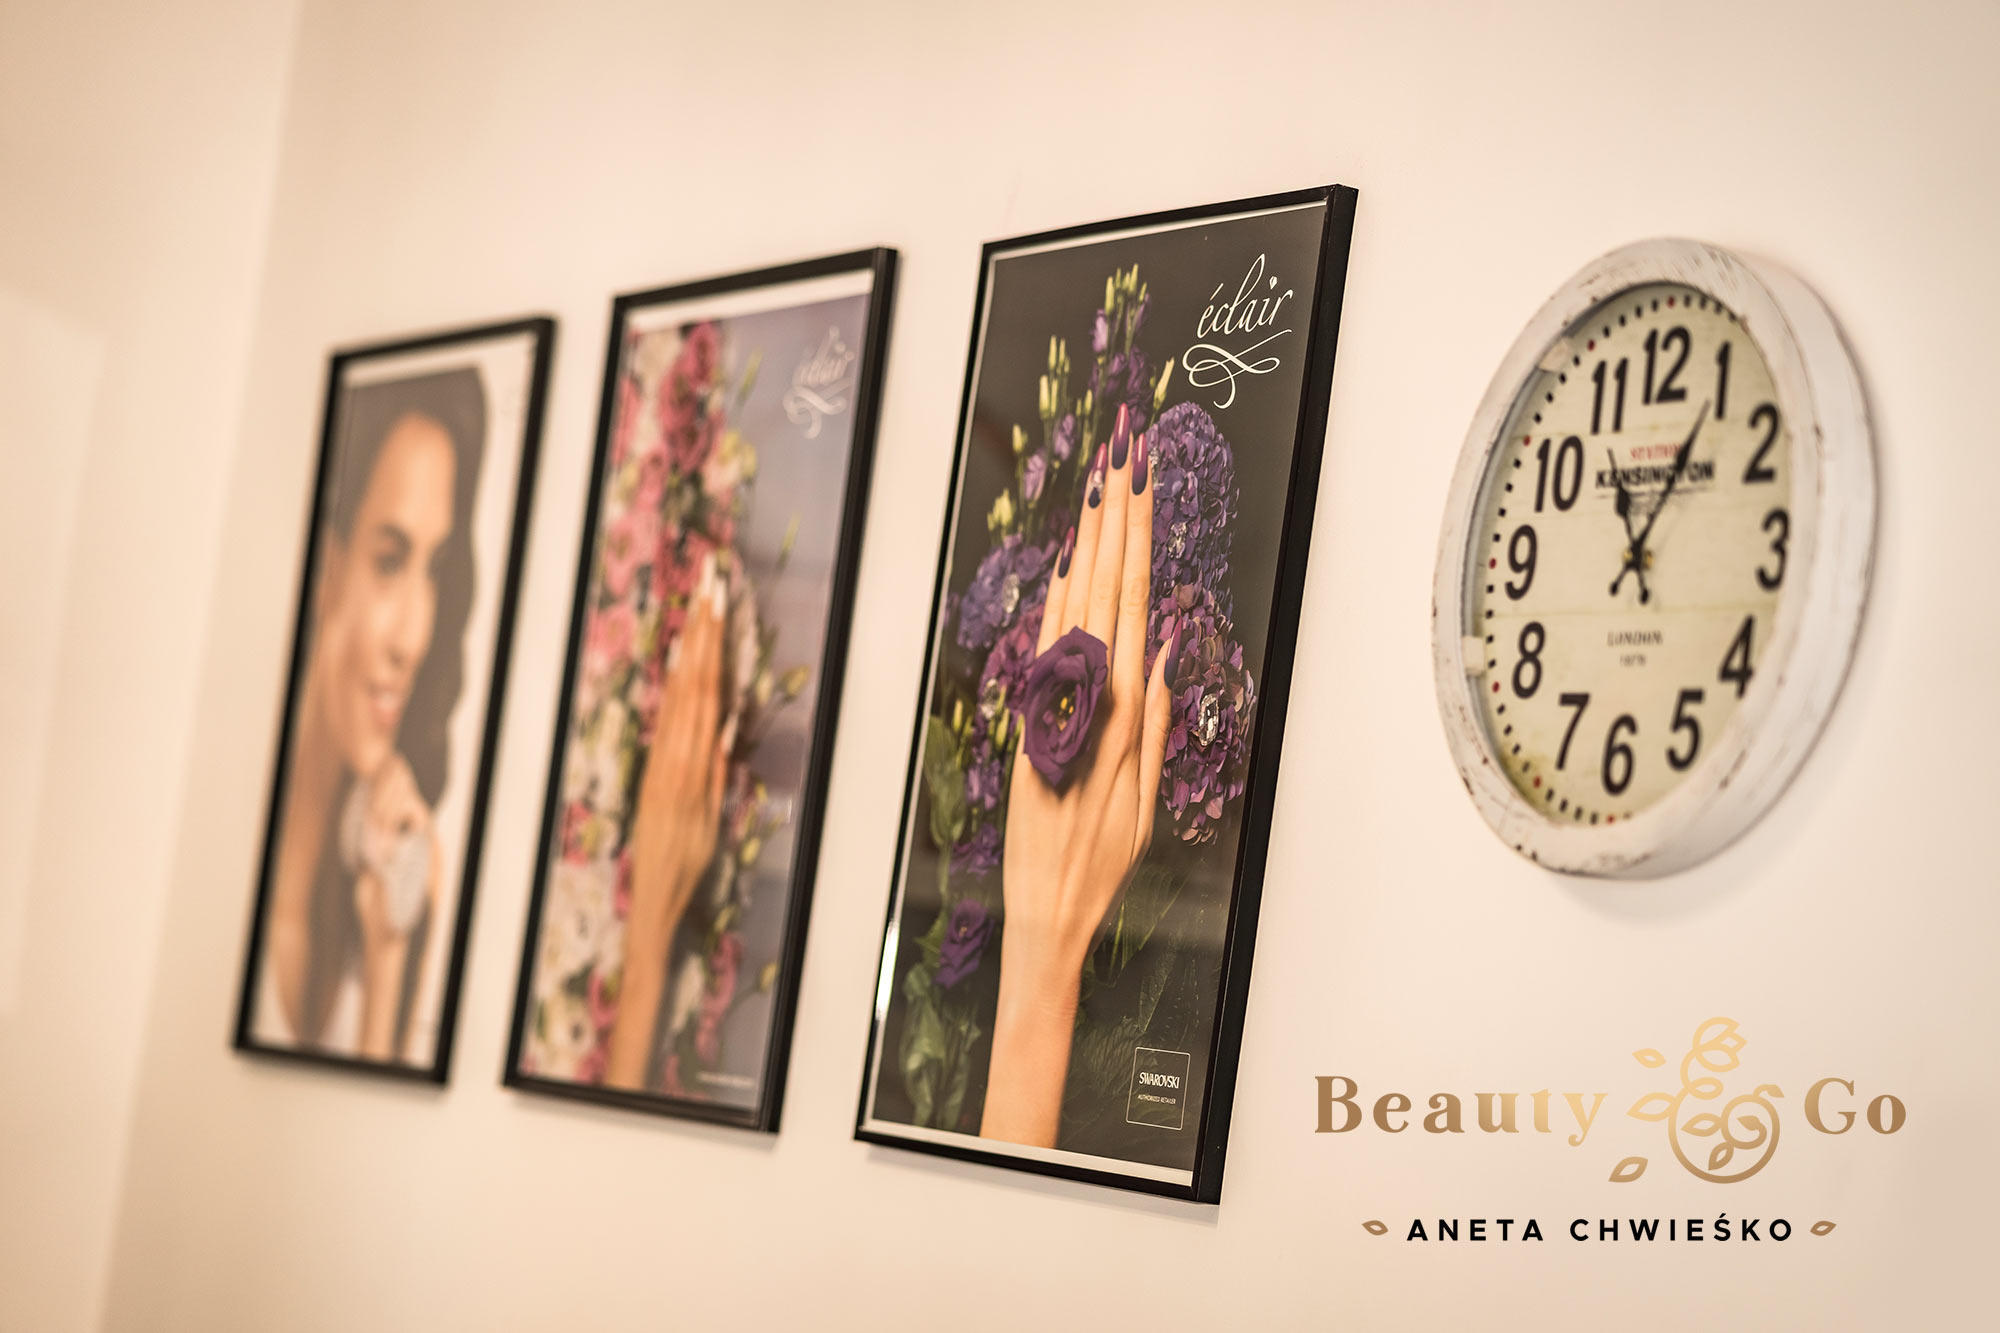 Salon Kosmetyczny Beauty & Go Anetaa Chwieśko w Gryficach. Shadowart. Projekt logo, wizytówki, strony internetowe.